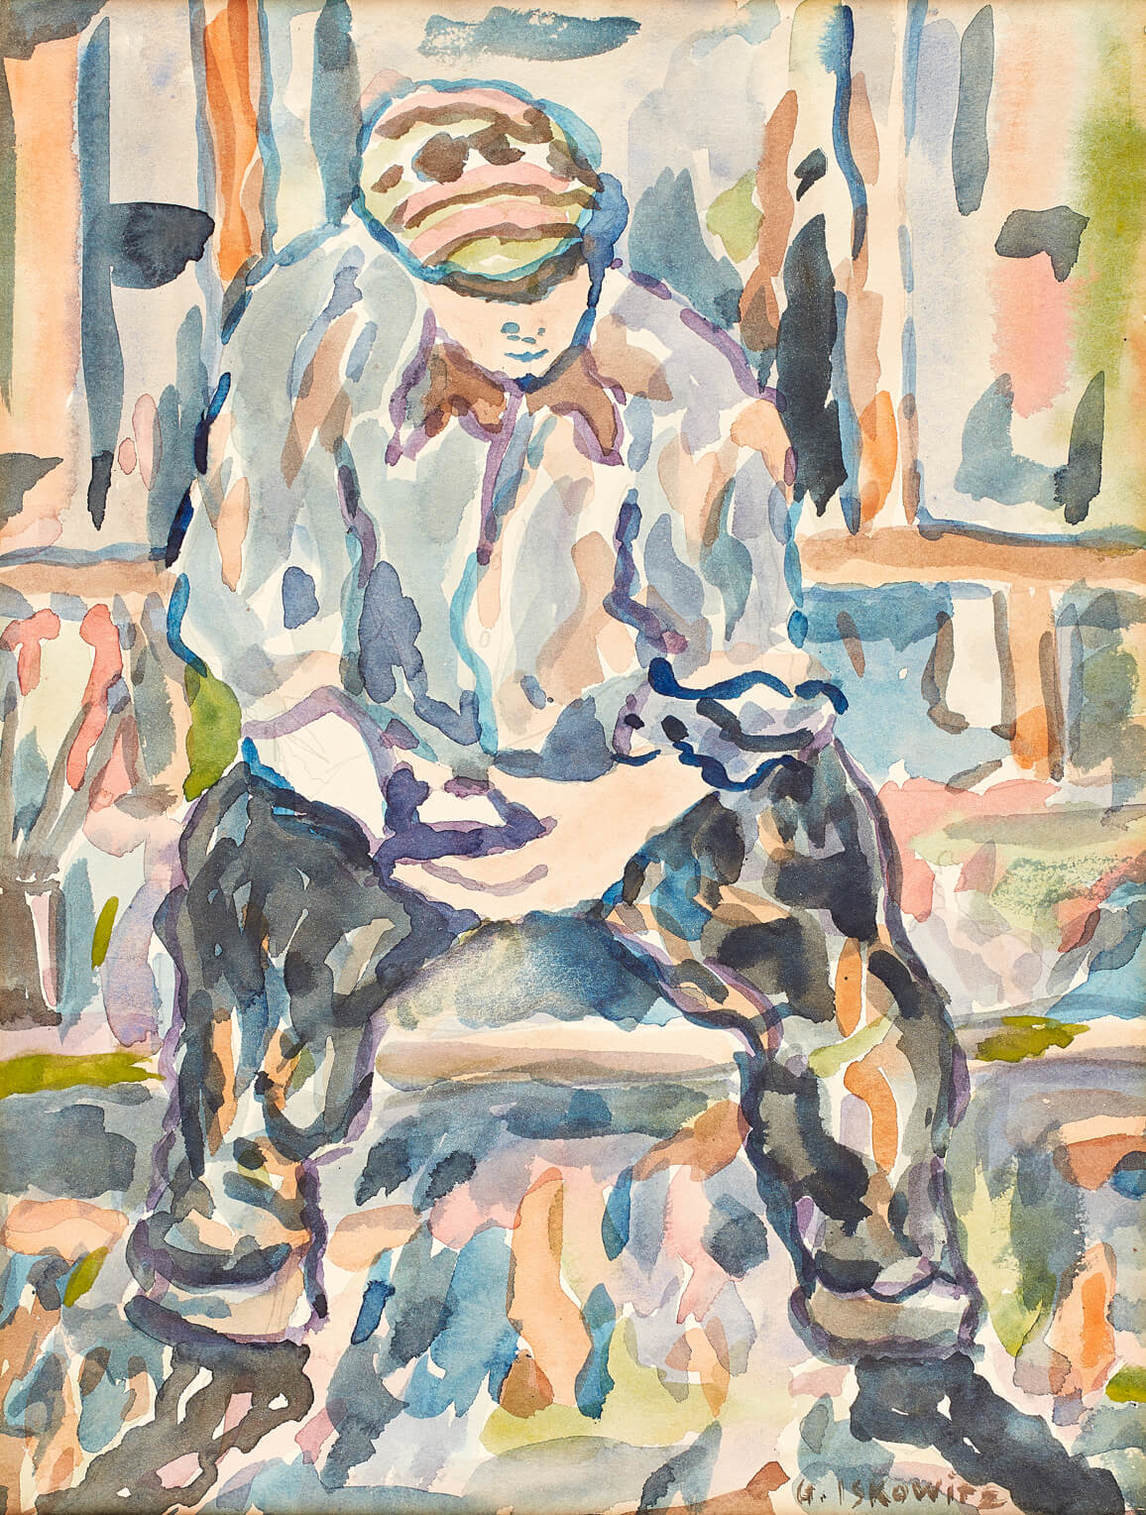 Art Canada Institute, Gershon Iskowitz, Untitled (seated figure), c.1955